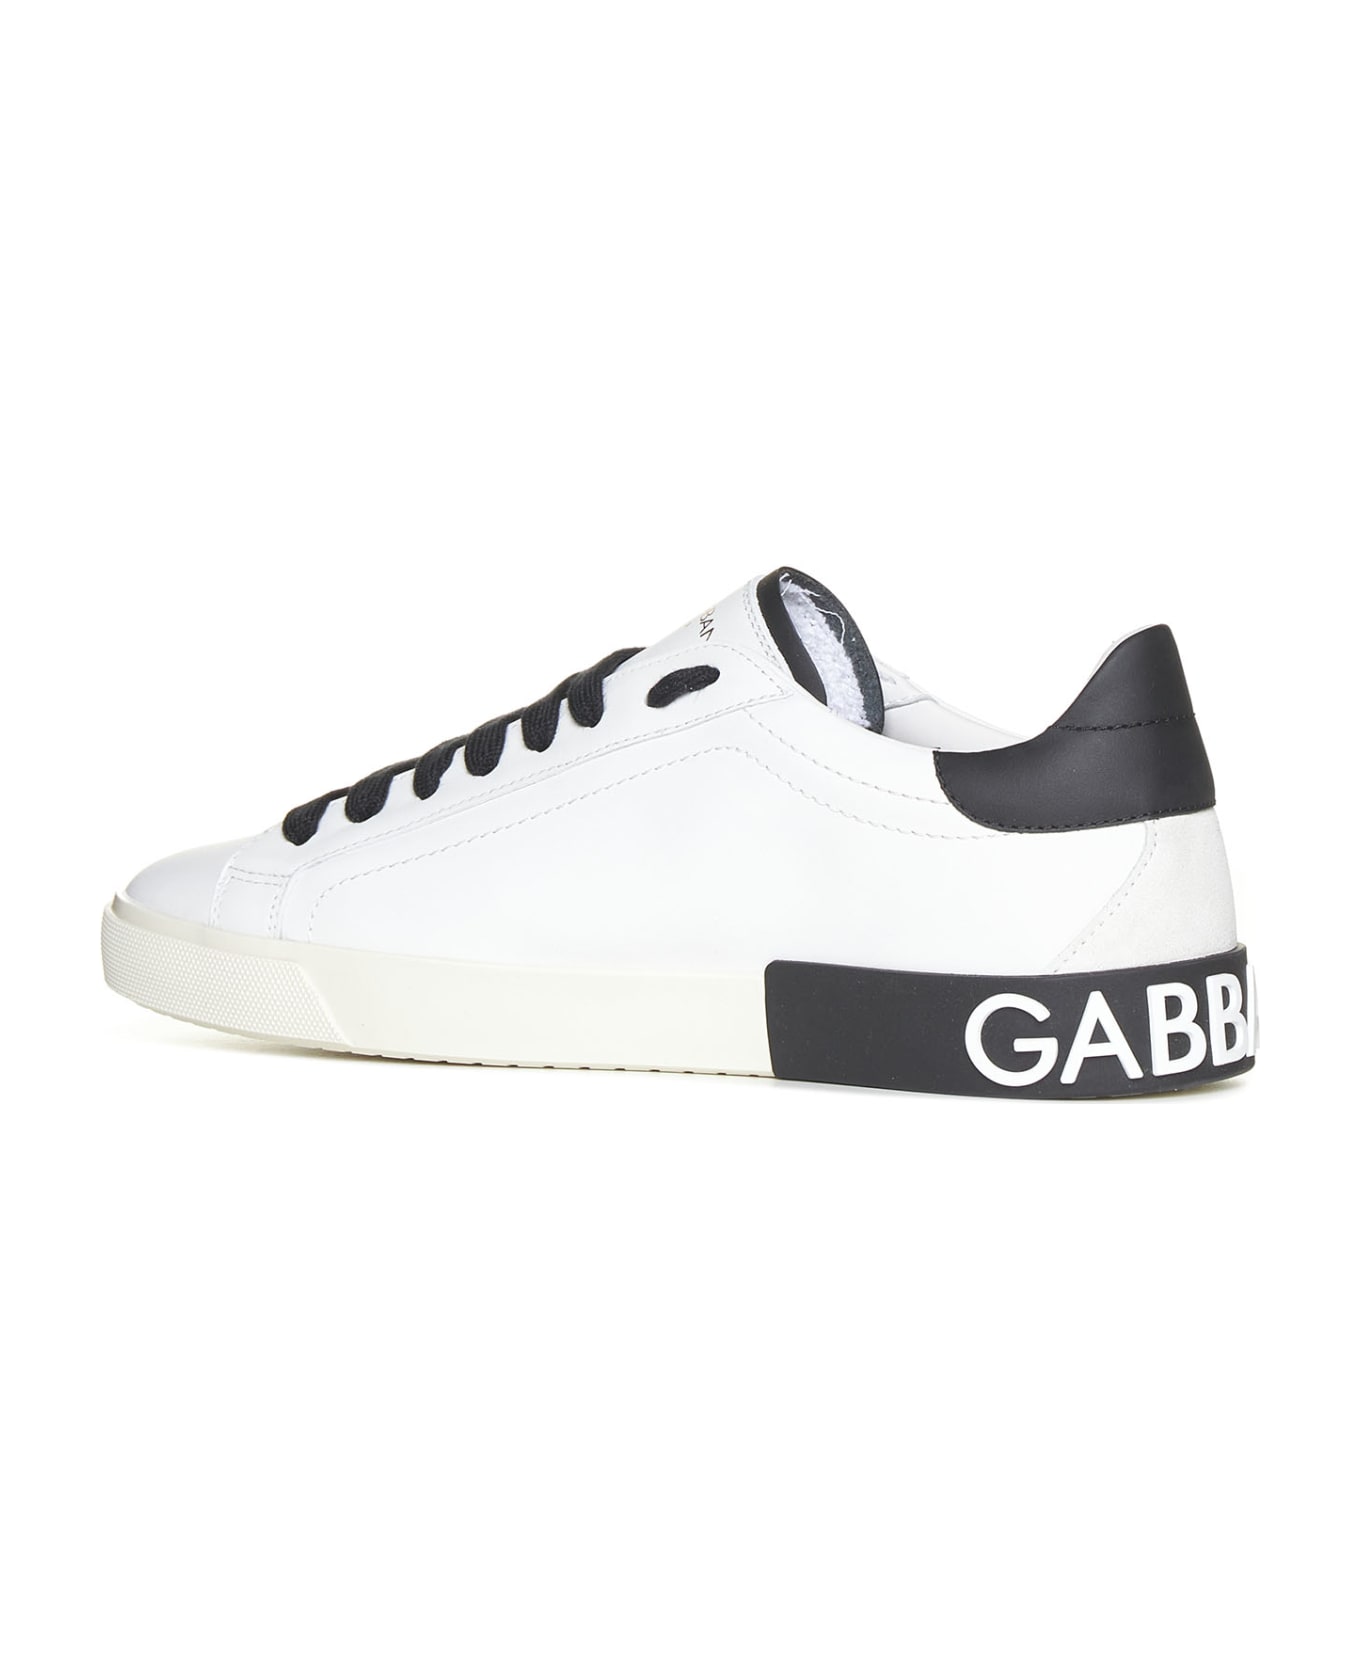 Dolce & Gabbana Portofino Sneakers - White スニーカー